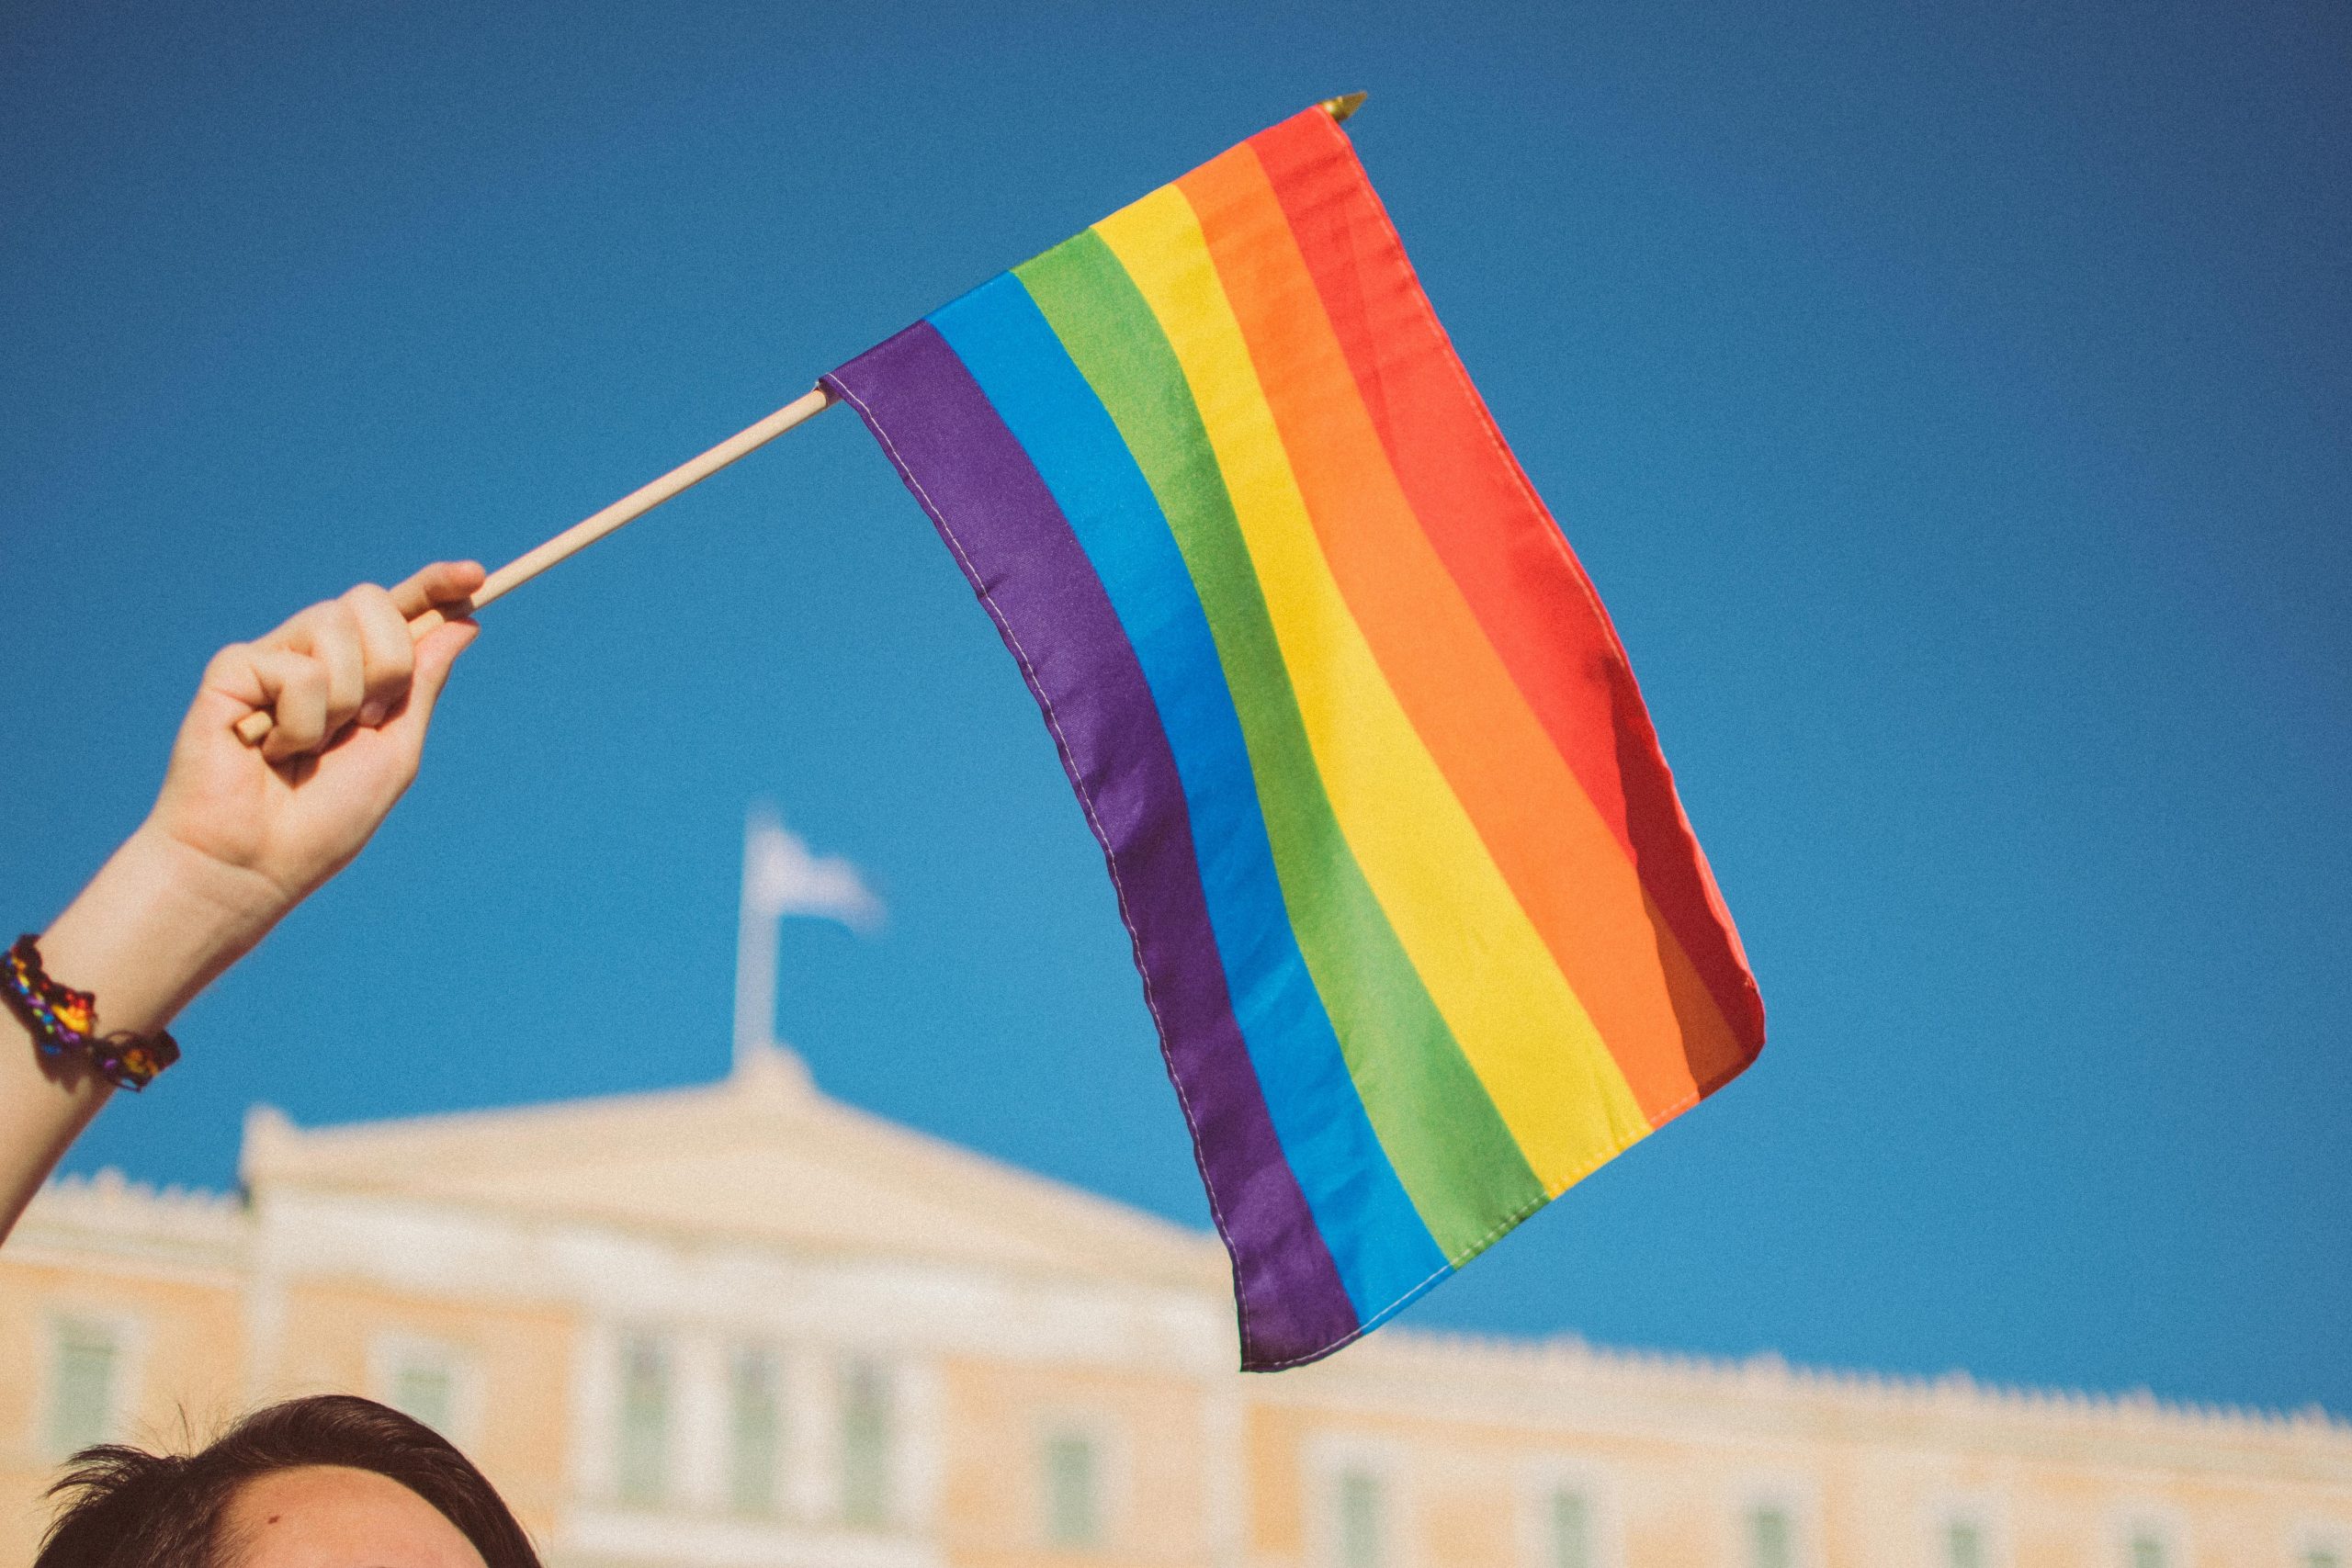 Mensagens anti-LGBTQI+ nas redes sociais cresceram quase 185% em Portugal nos últimos quatro anos